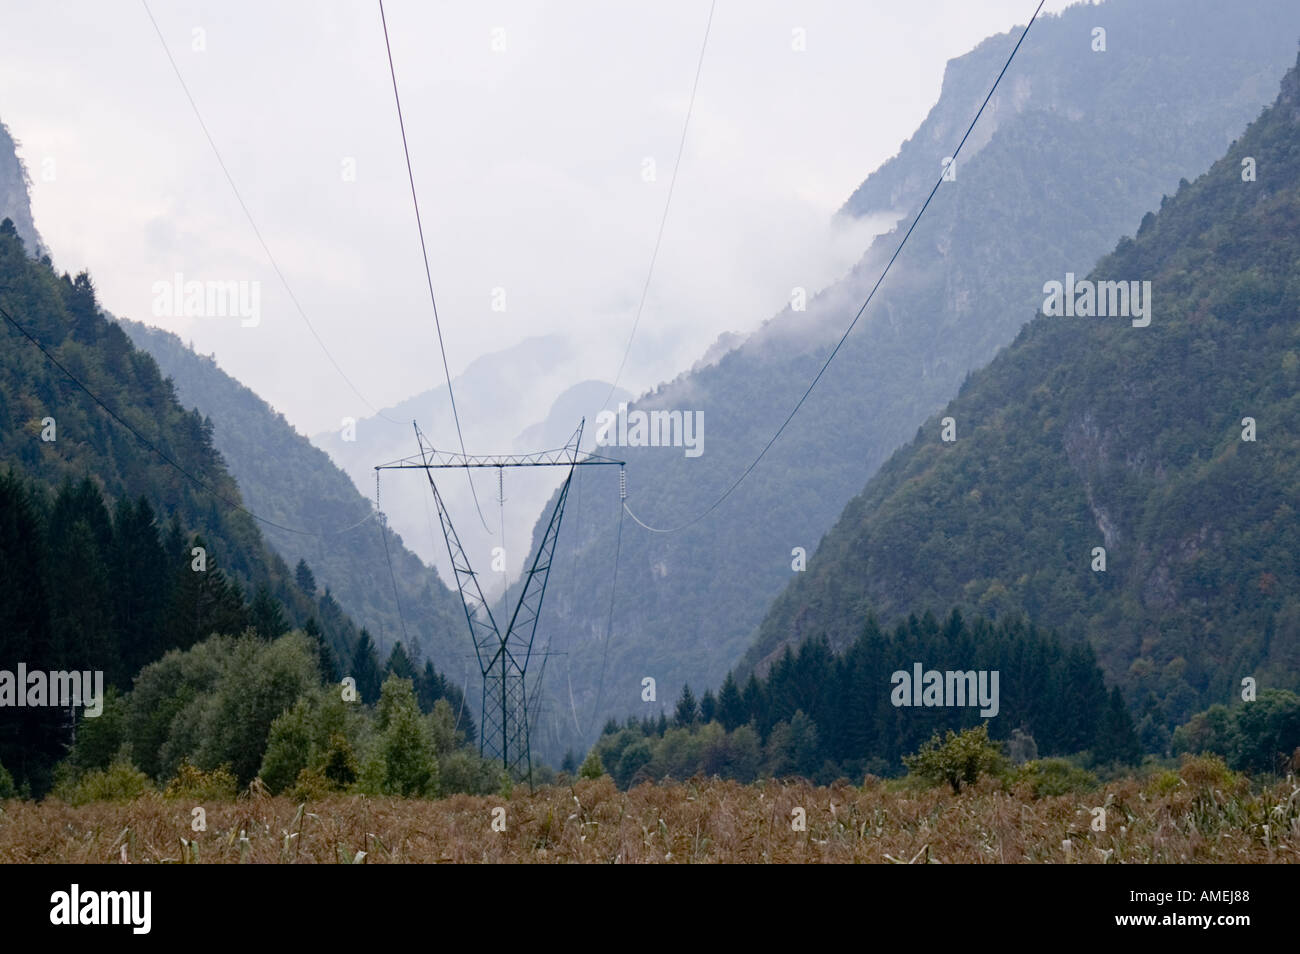 Val d'Ampola in Trentino alpi vicino al Lago di Garda Italia naturali riserva ecologica con zona umida stagionale e lago di sentieri e visitatore c Foto Stock